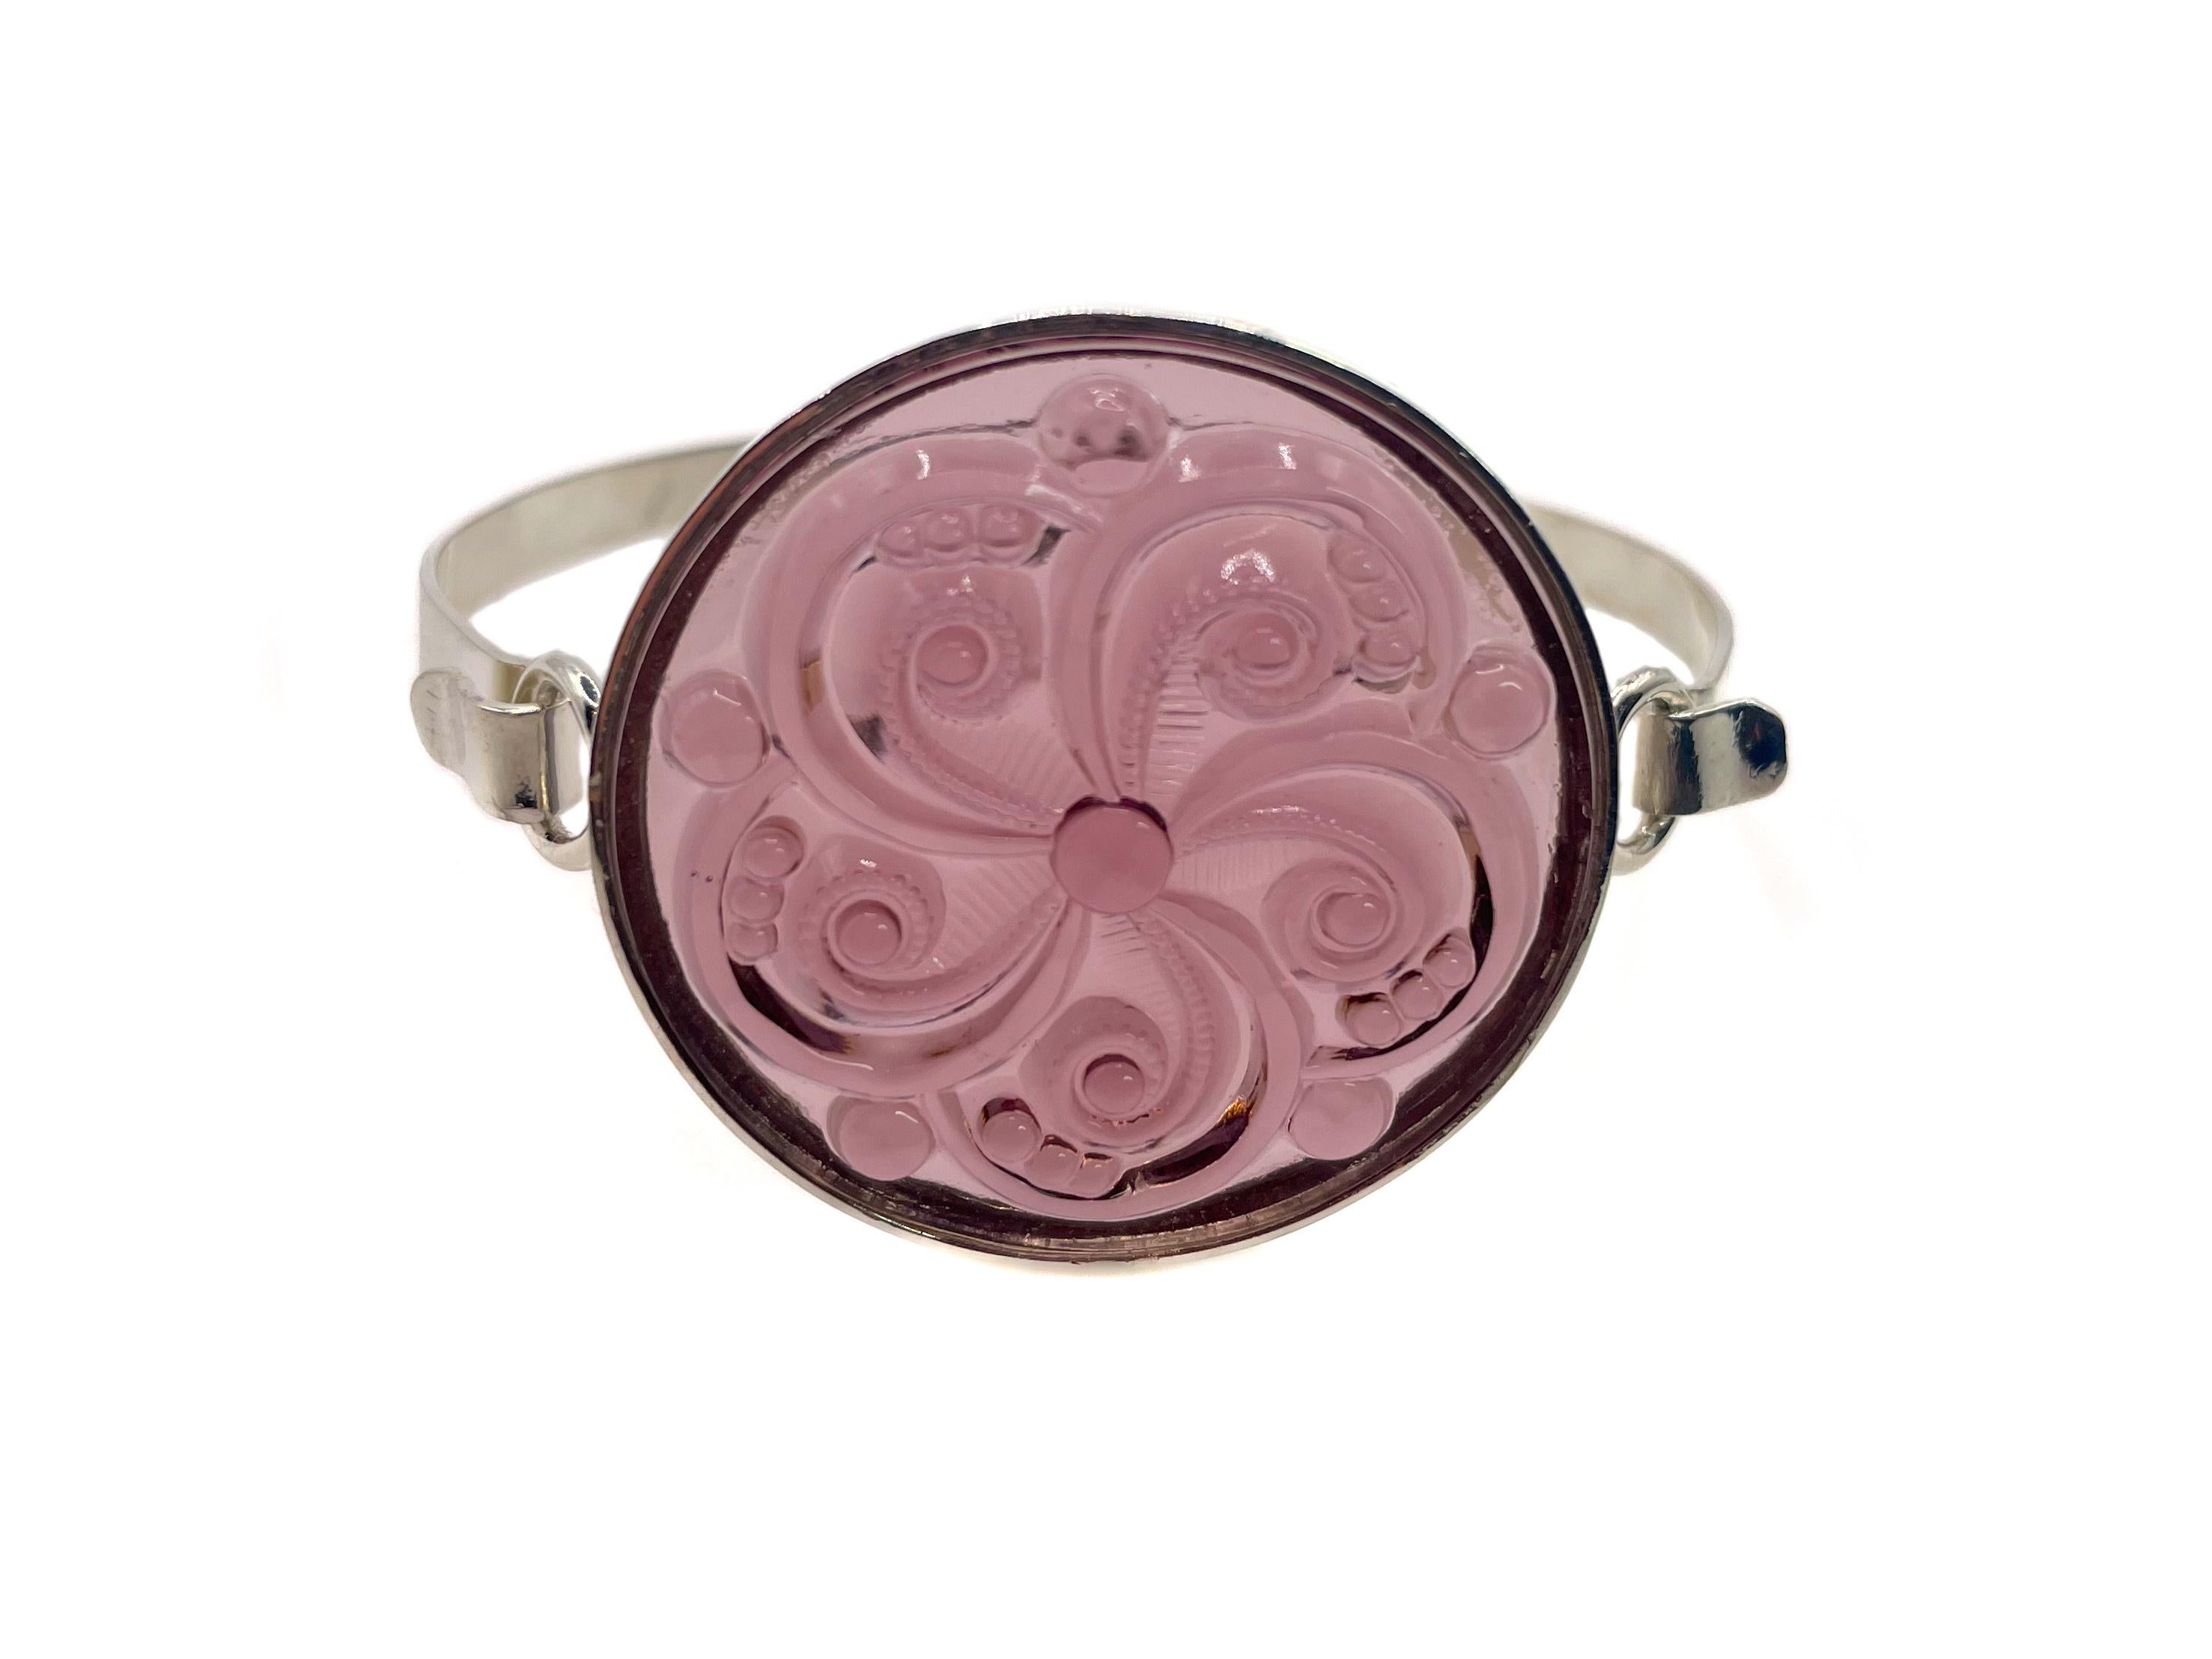 Dieses raffinierte Armband im Stil von Lalique ist mit einem hellen Amethyst-Glascabochon mit Wirbelmotiv aus Deutschland versehen. 

Das runde geformte Glasstück ist in eine Fassung aus NEUEM Sterlingsilber gefasst. Sie hat einen eleganten und